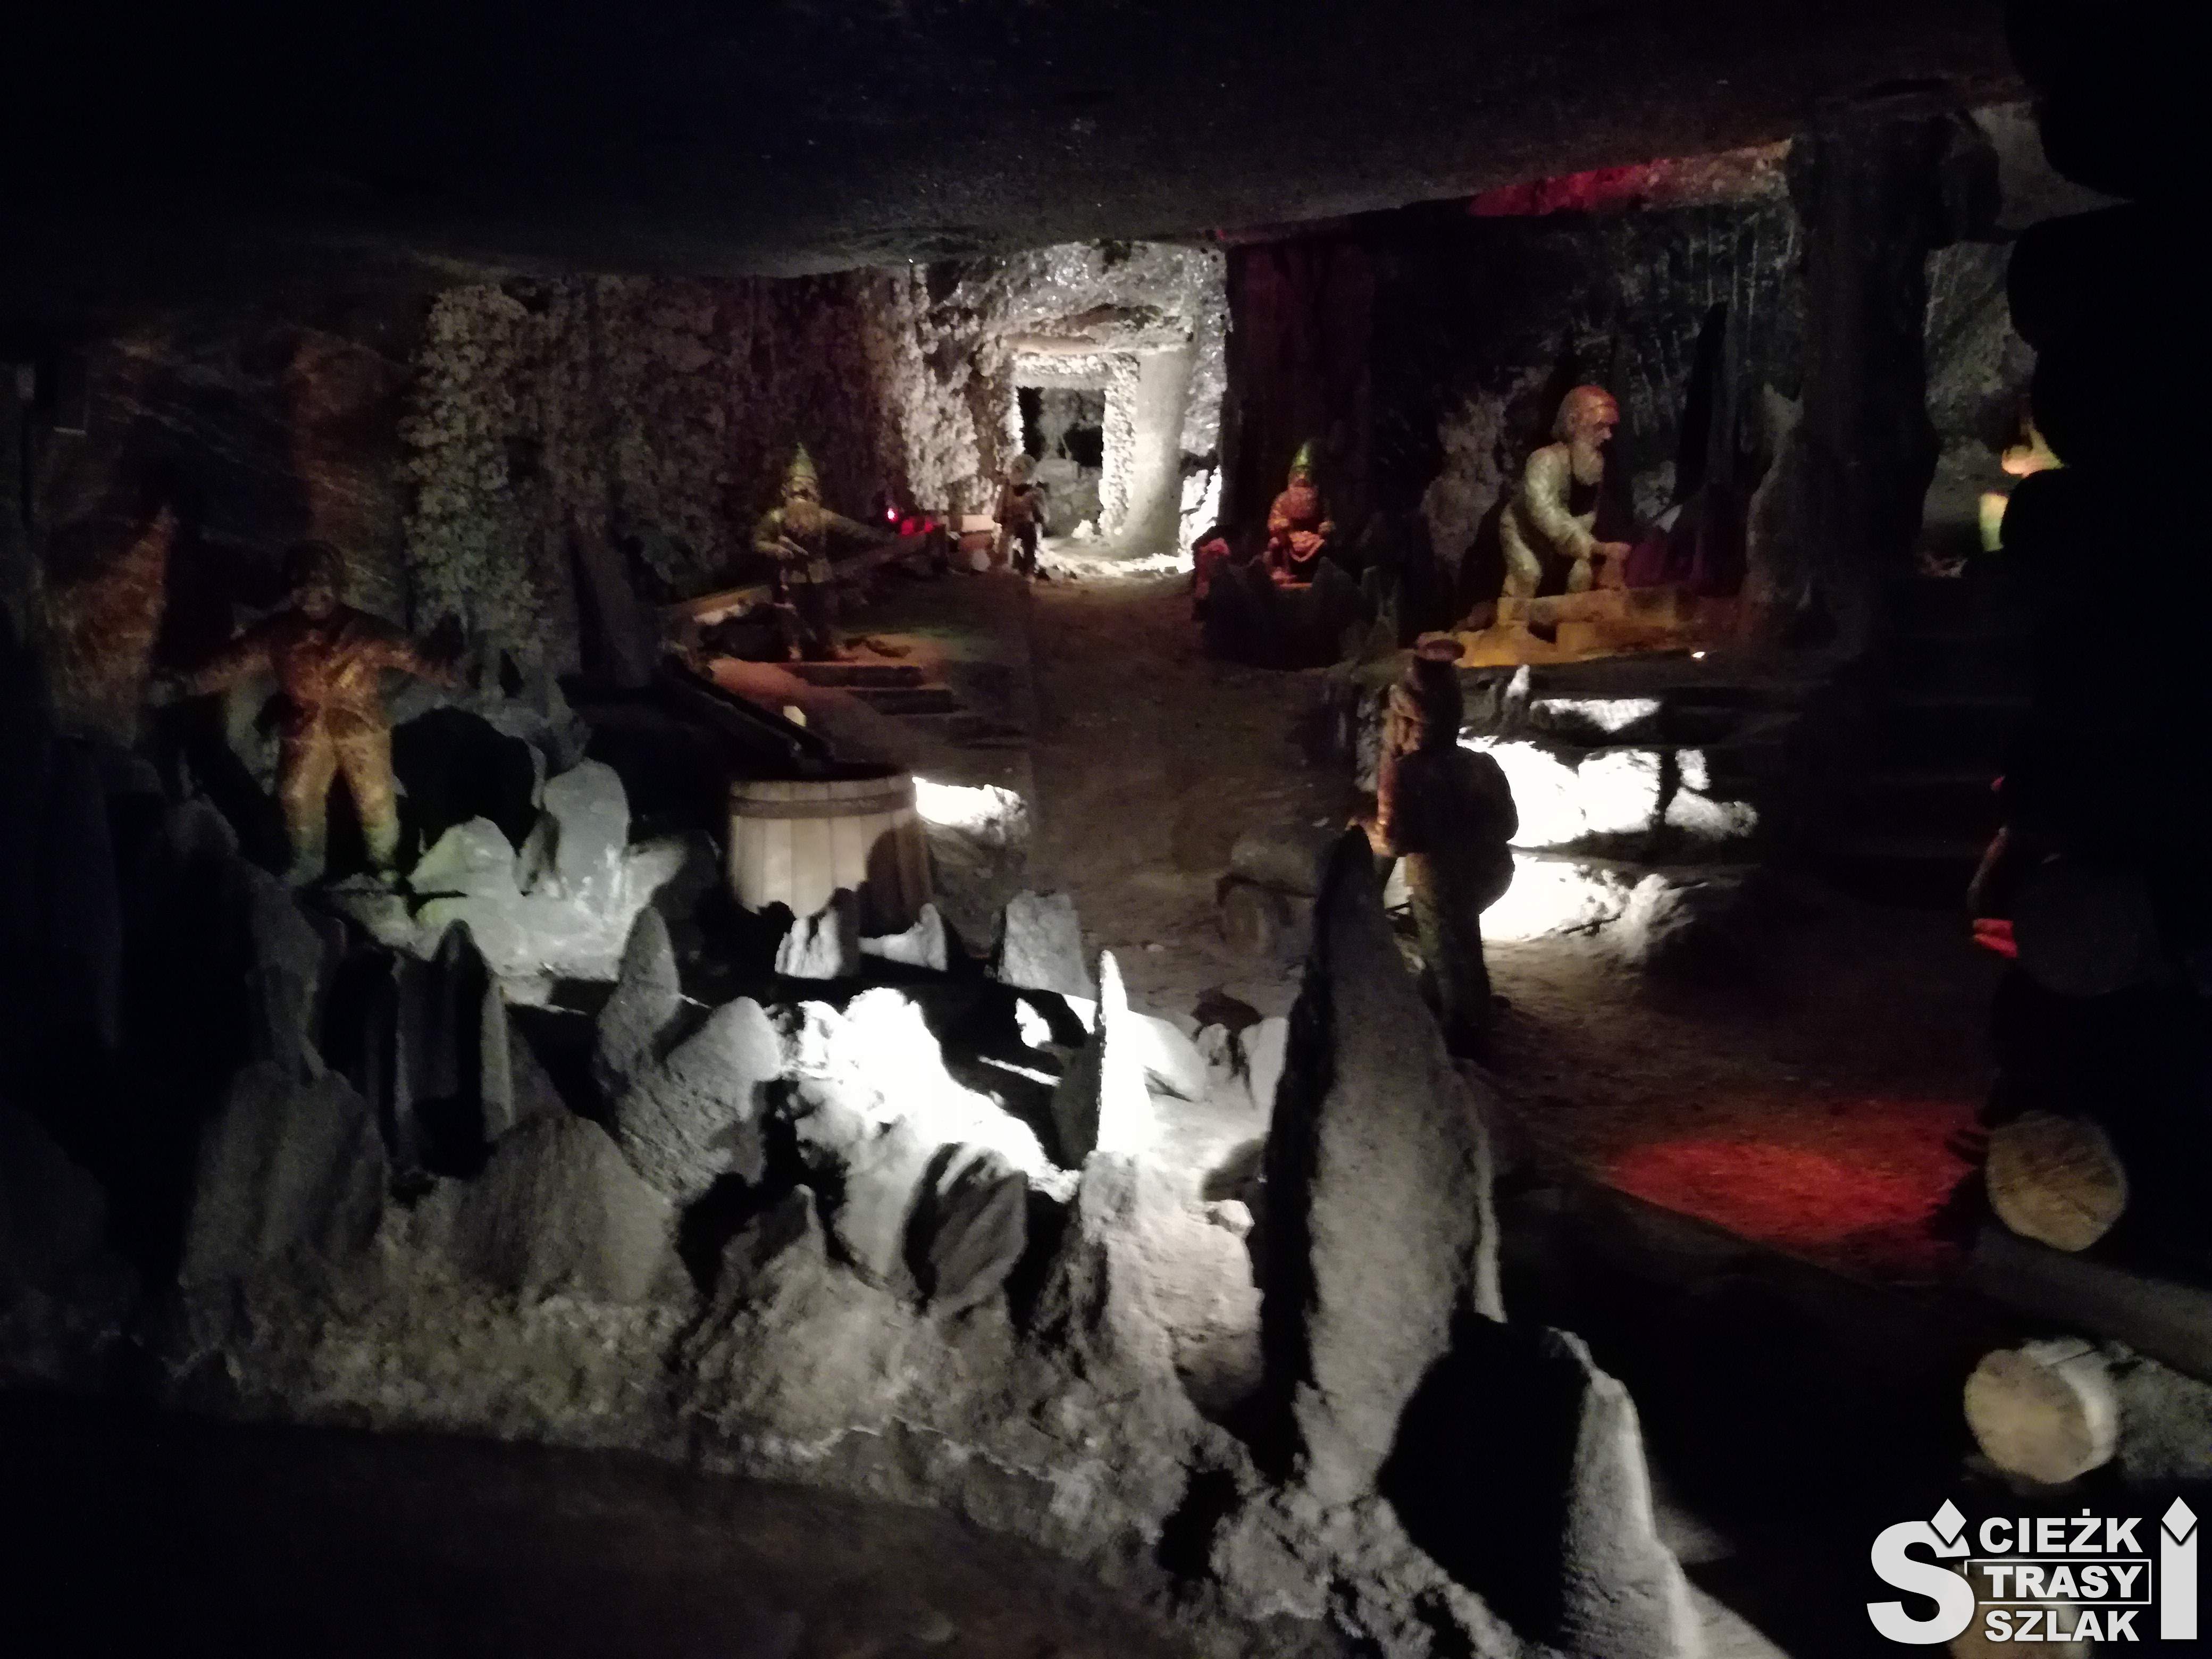 Ciemna wnęka wydrążona w ziemi w czasie eksploatacji soli w Wieliczce z ekspozycją figur i postaci górników